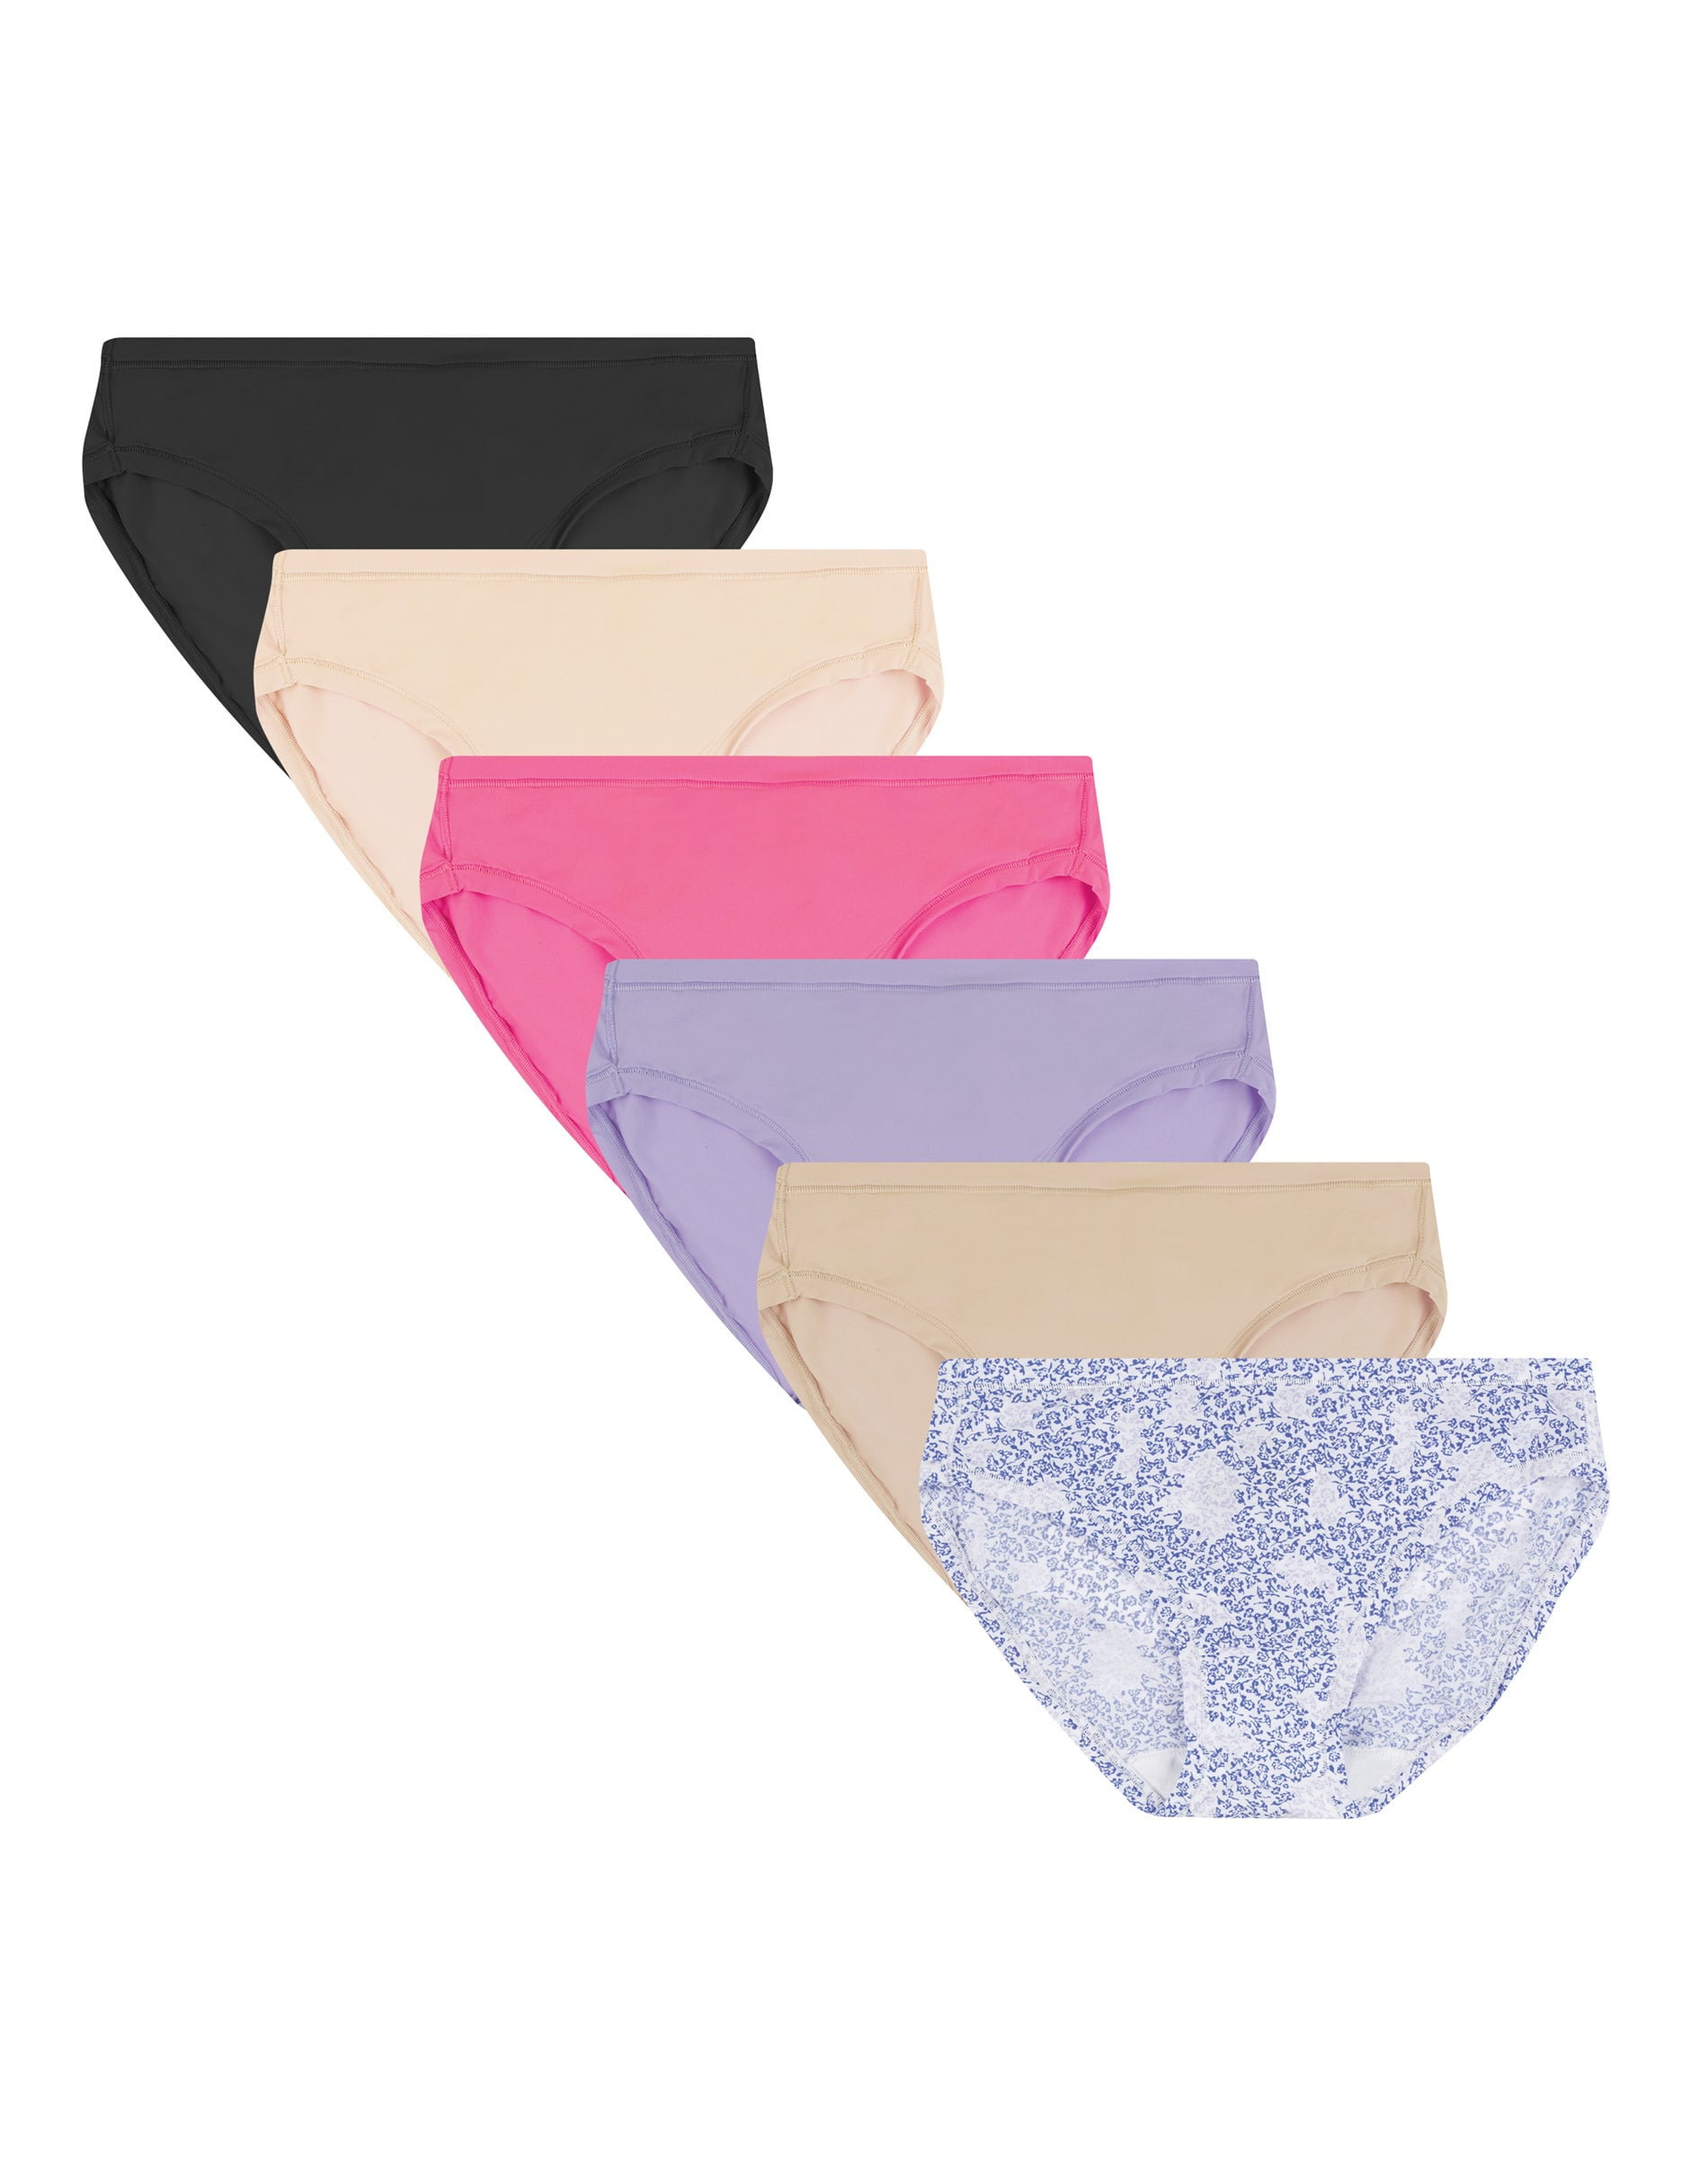 M542AS - Hanes Women`s Cool Comfort Microfiber Bikini Panties 5-Pack